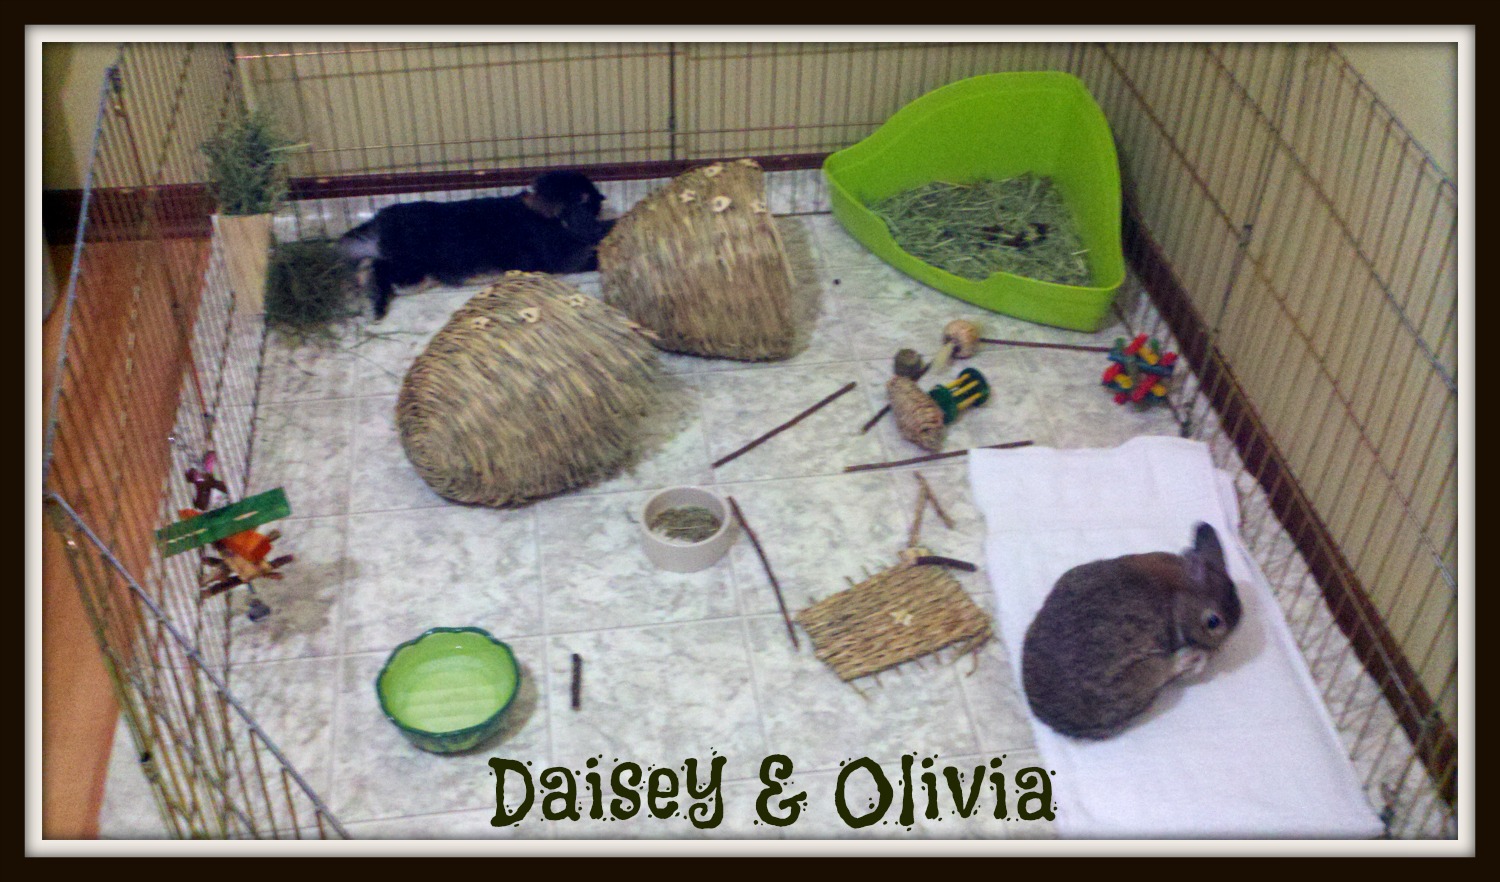 Daisey & Olivia